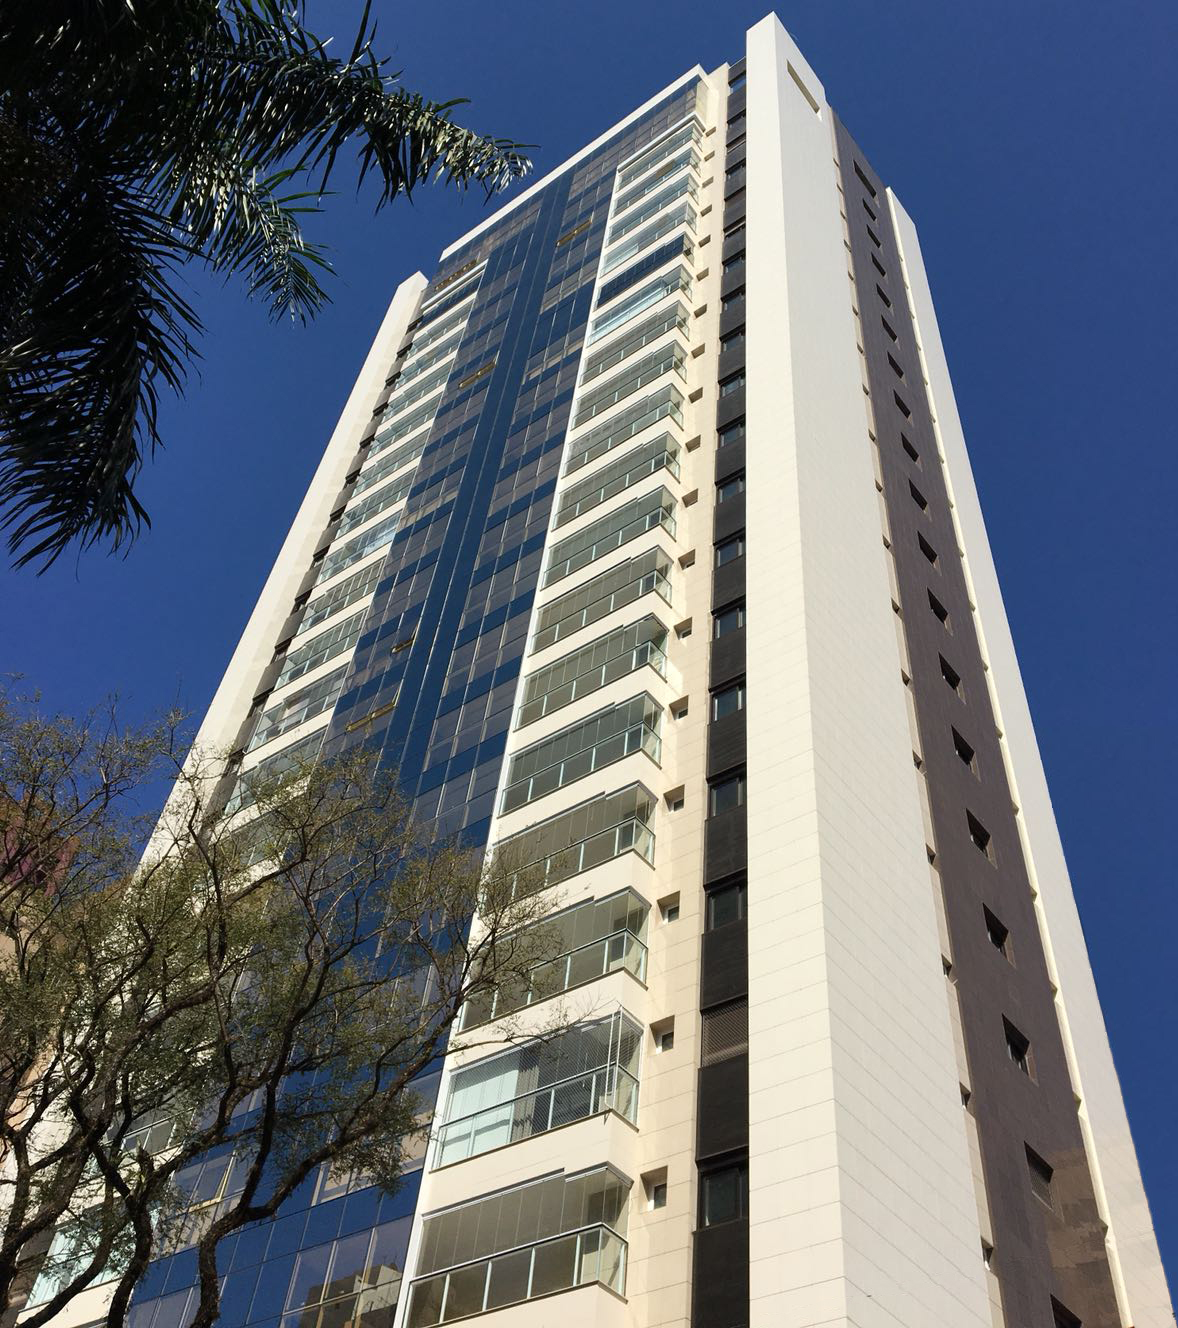 A fachada ventilada também tem um grande apelo estético, ajudando a destacar os edifícios, como é o caso do Sunset Plaza Residence Club, em Maringá (Projeto: Mendes Cardoso Arq.)